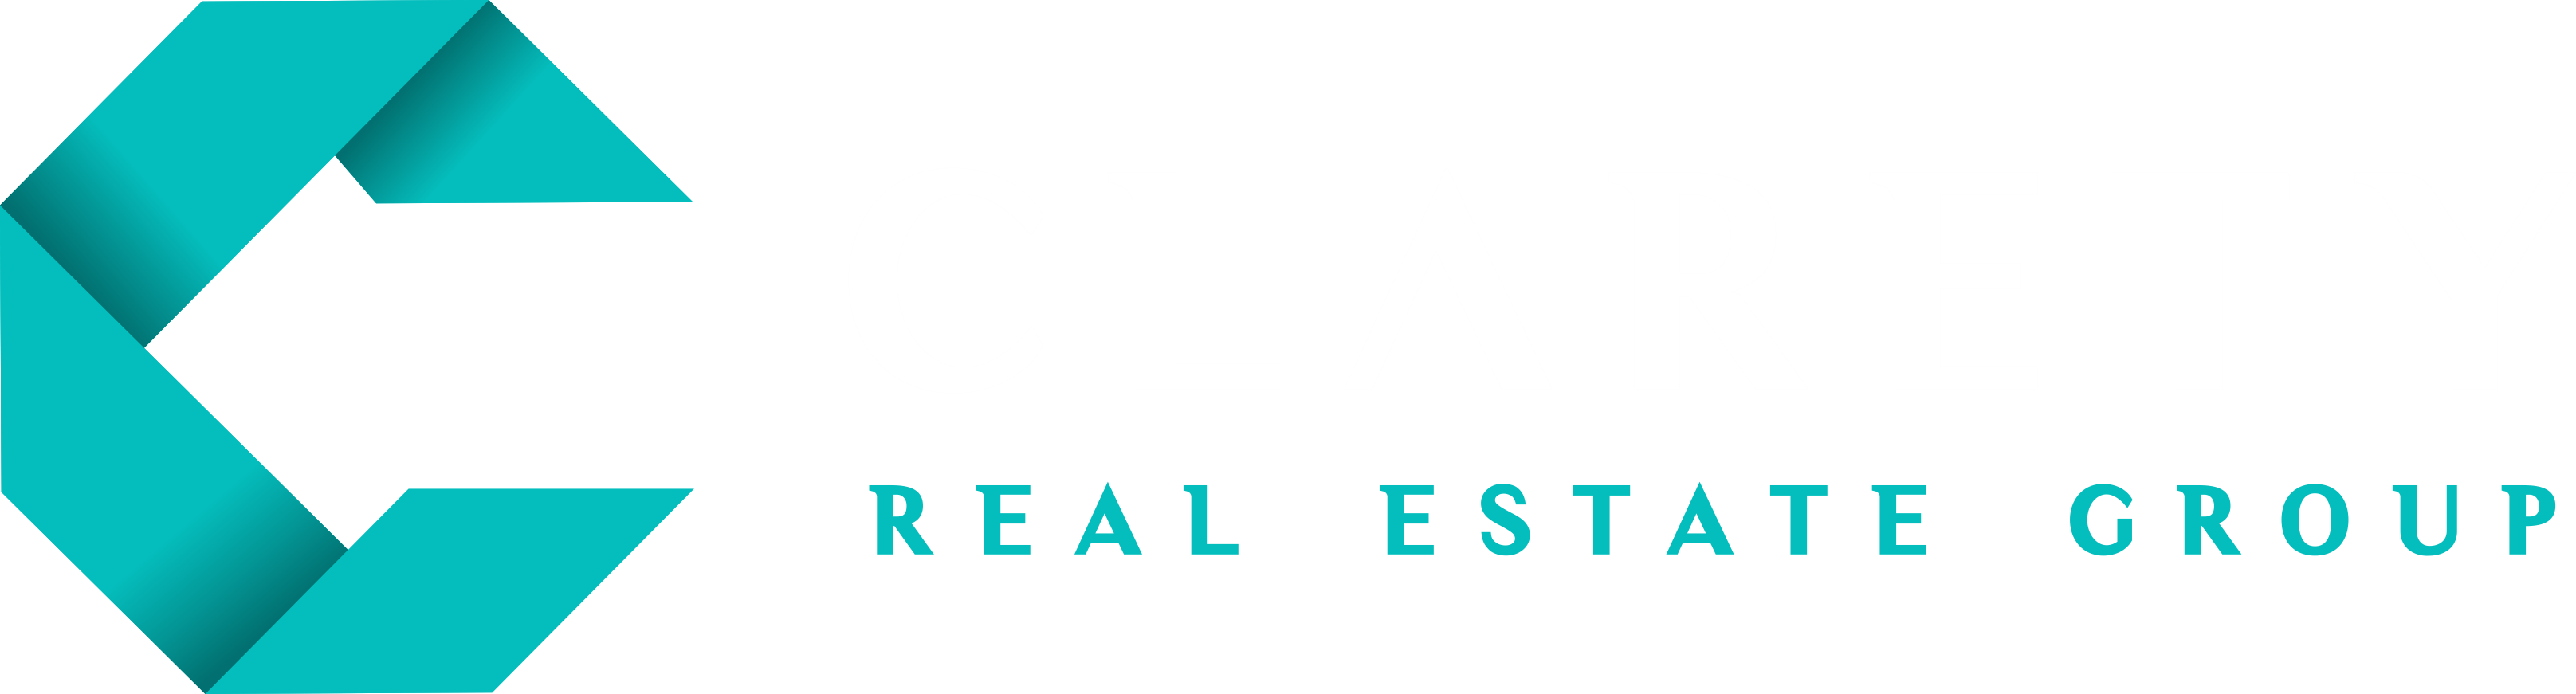 Clarety Real Estate Group | KW San Jose Gateway CalDRE# 01963478